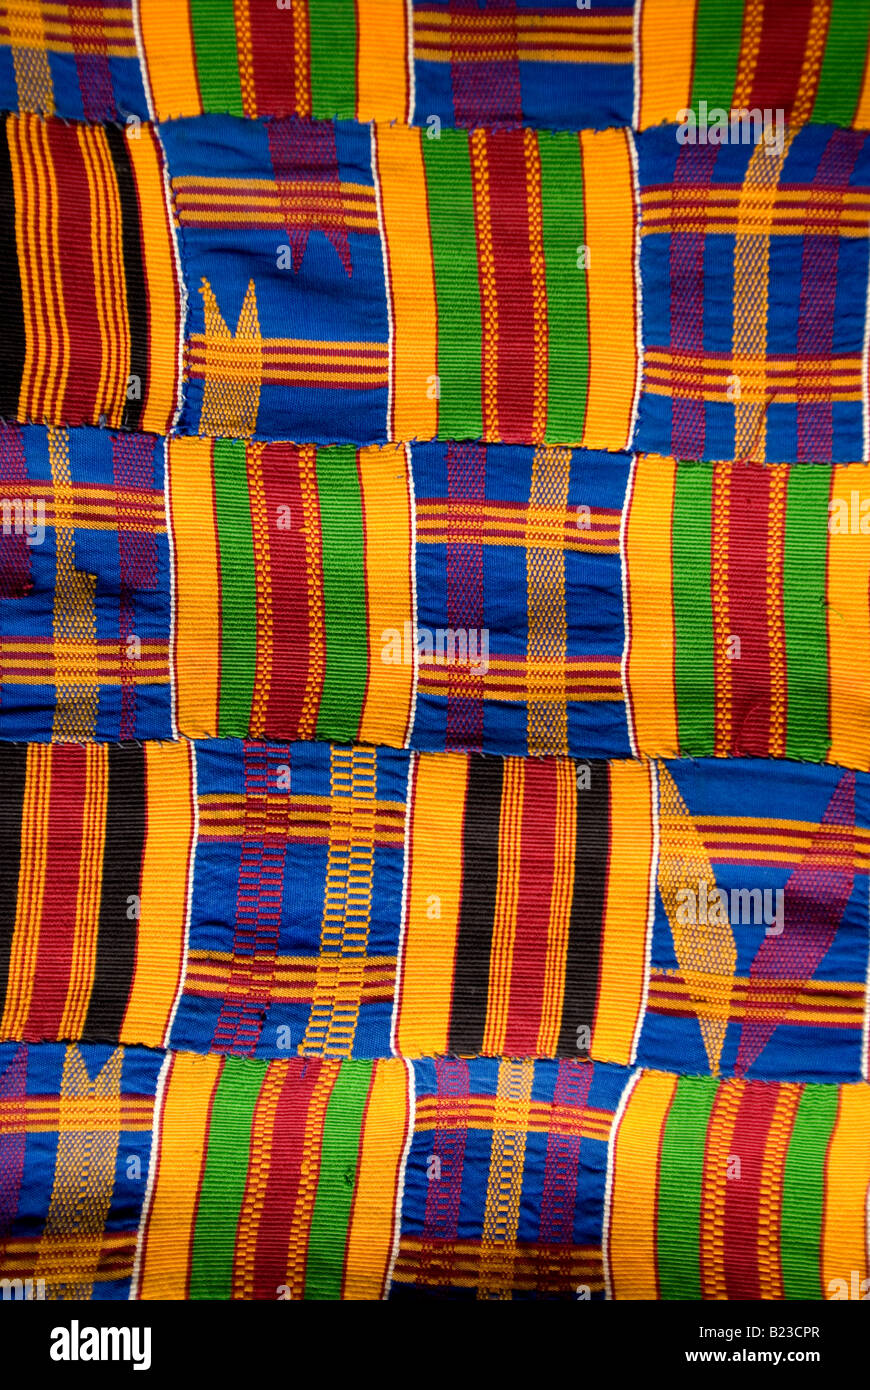 Vải kente Ghana – một trong những loại vải đặc trưng của châu Phi – đang trở nên ngày càng phổ biến trên toàn thế giới. Sự bền bỉ và tinh tế của nó mang đến sự độc đáo khi được kết hợp vào trang phục, túi xách, và nhiều sản phẩm khác. Hãy khám phá hình ảnh liên quan đến vải kente Ghana!